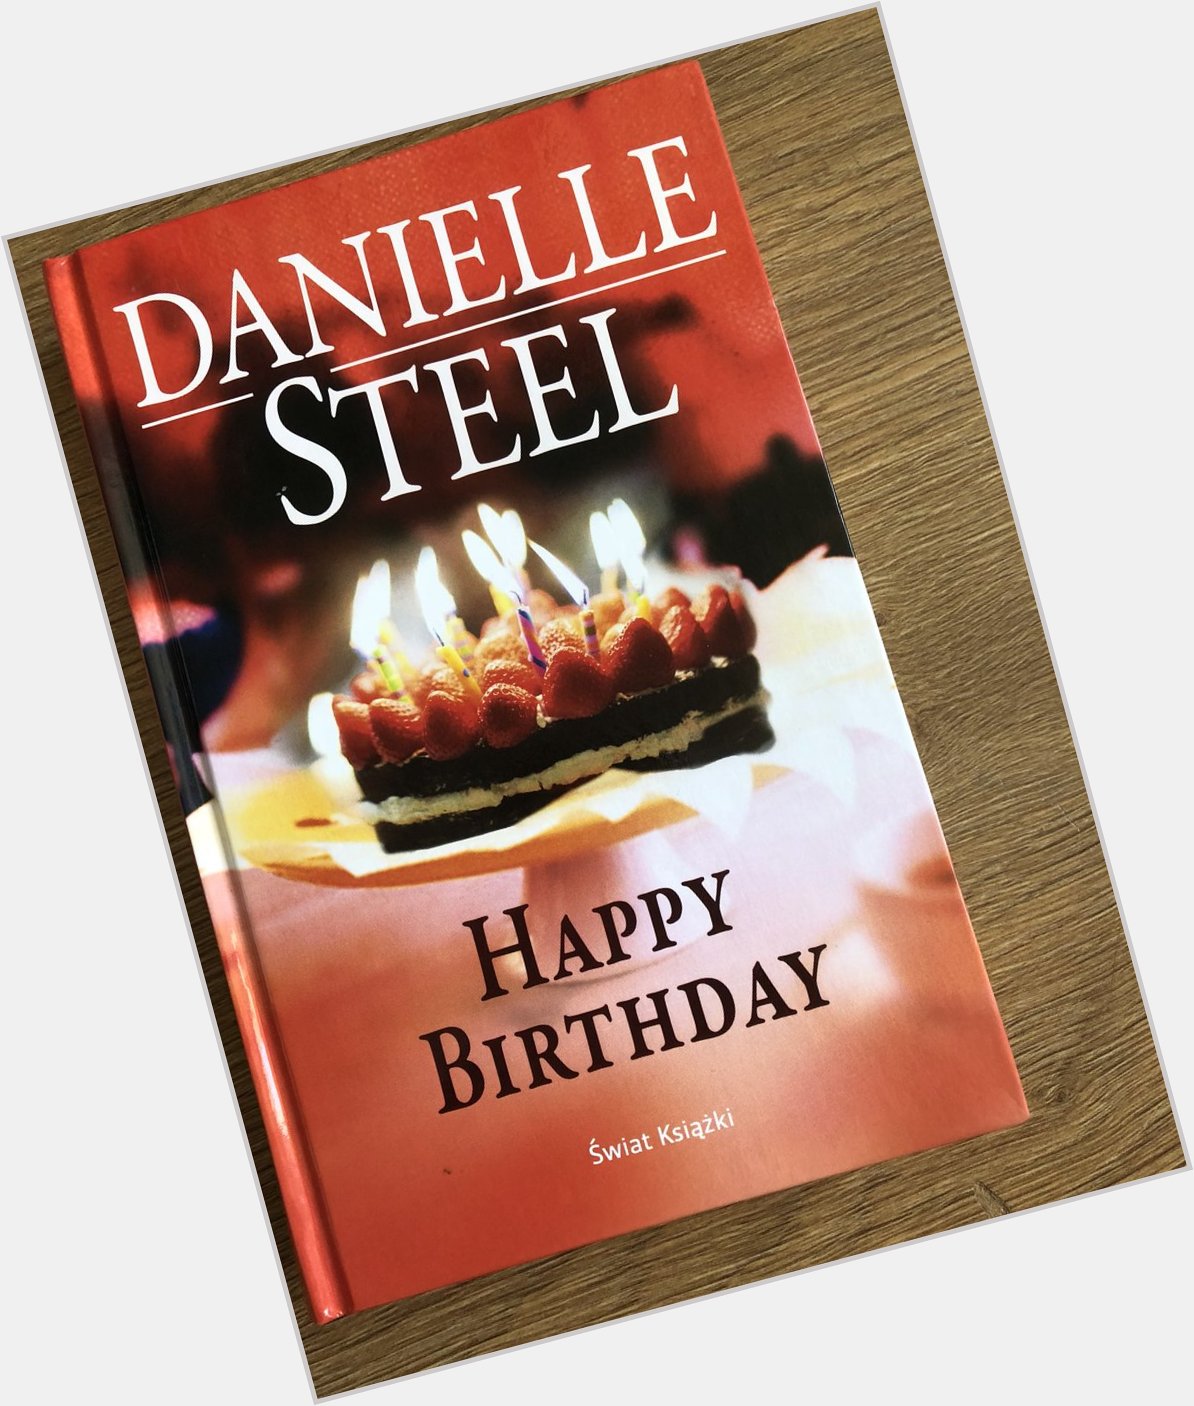 Stan idealny, Happy Birthday - Danielle Steel 25 z 